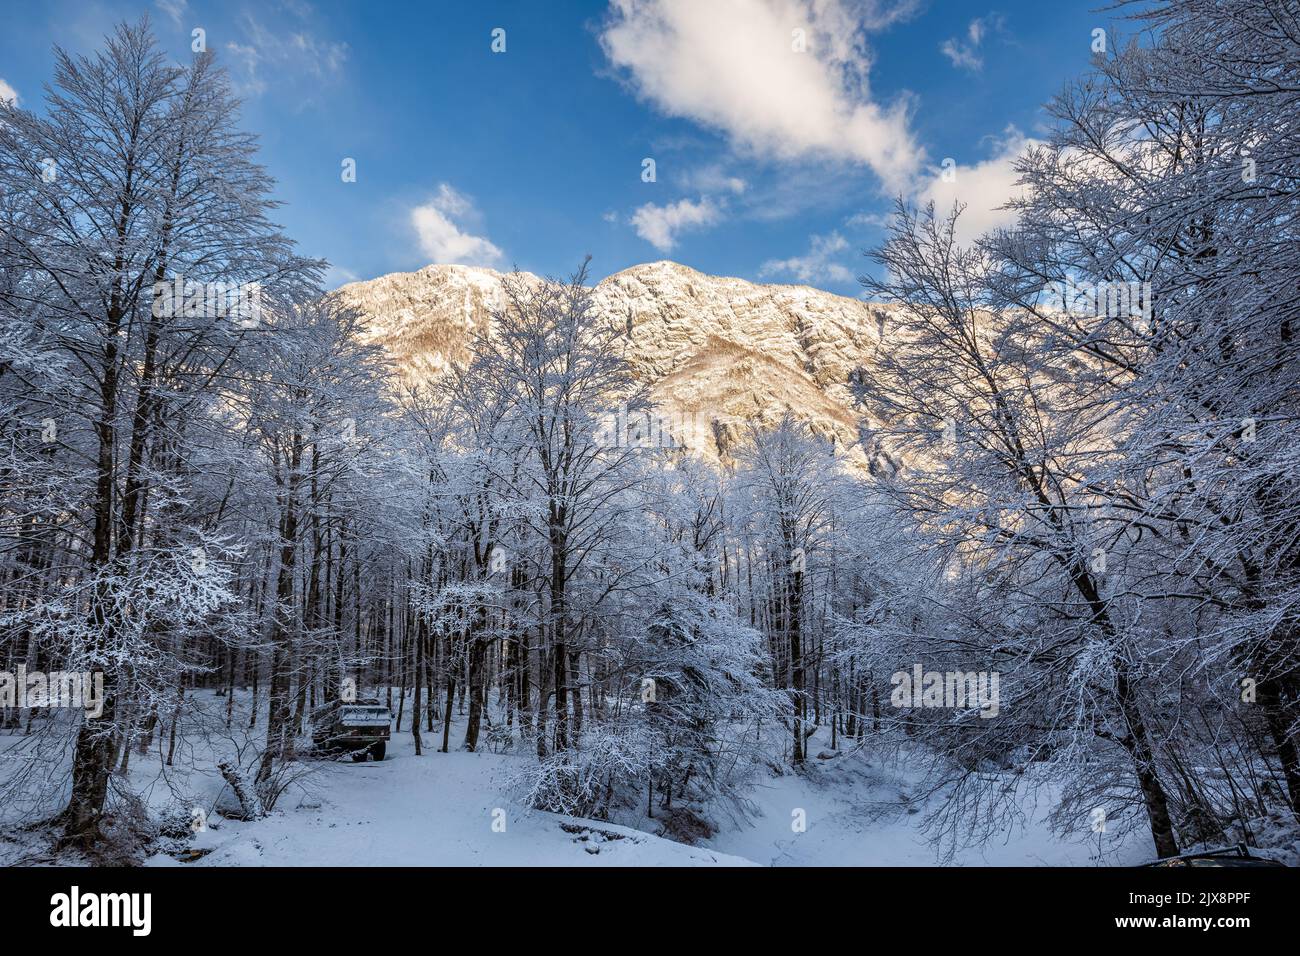 Vogel, Slovénie - magnifique paysage forestier d'hiver à Vogel, Slovénie avec montagne ensoleillée, vieux camion de l'armée sous les arbres et ciel bleu clair à l'arrière Banque D'Images